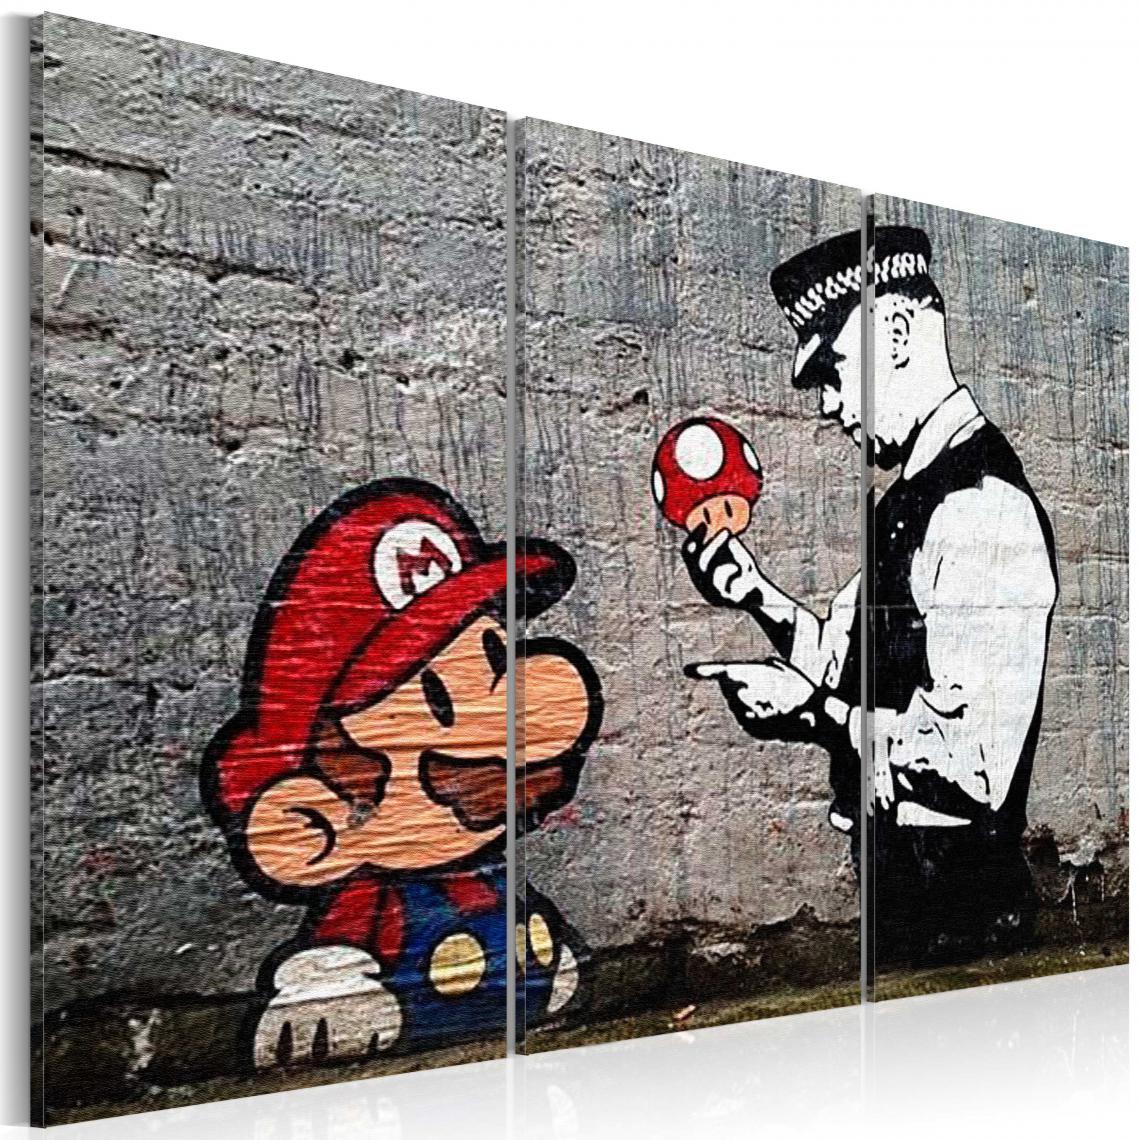 Decoshop26 - Tableau sur toile en 3 panneaux décoration murale image imprimée cadre en bois à suspendre Super Mario Mushroom Cop par Banksy 120x80 cm 11_0003459 - Tableaux, peintures